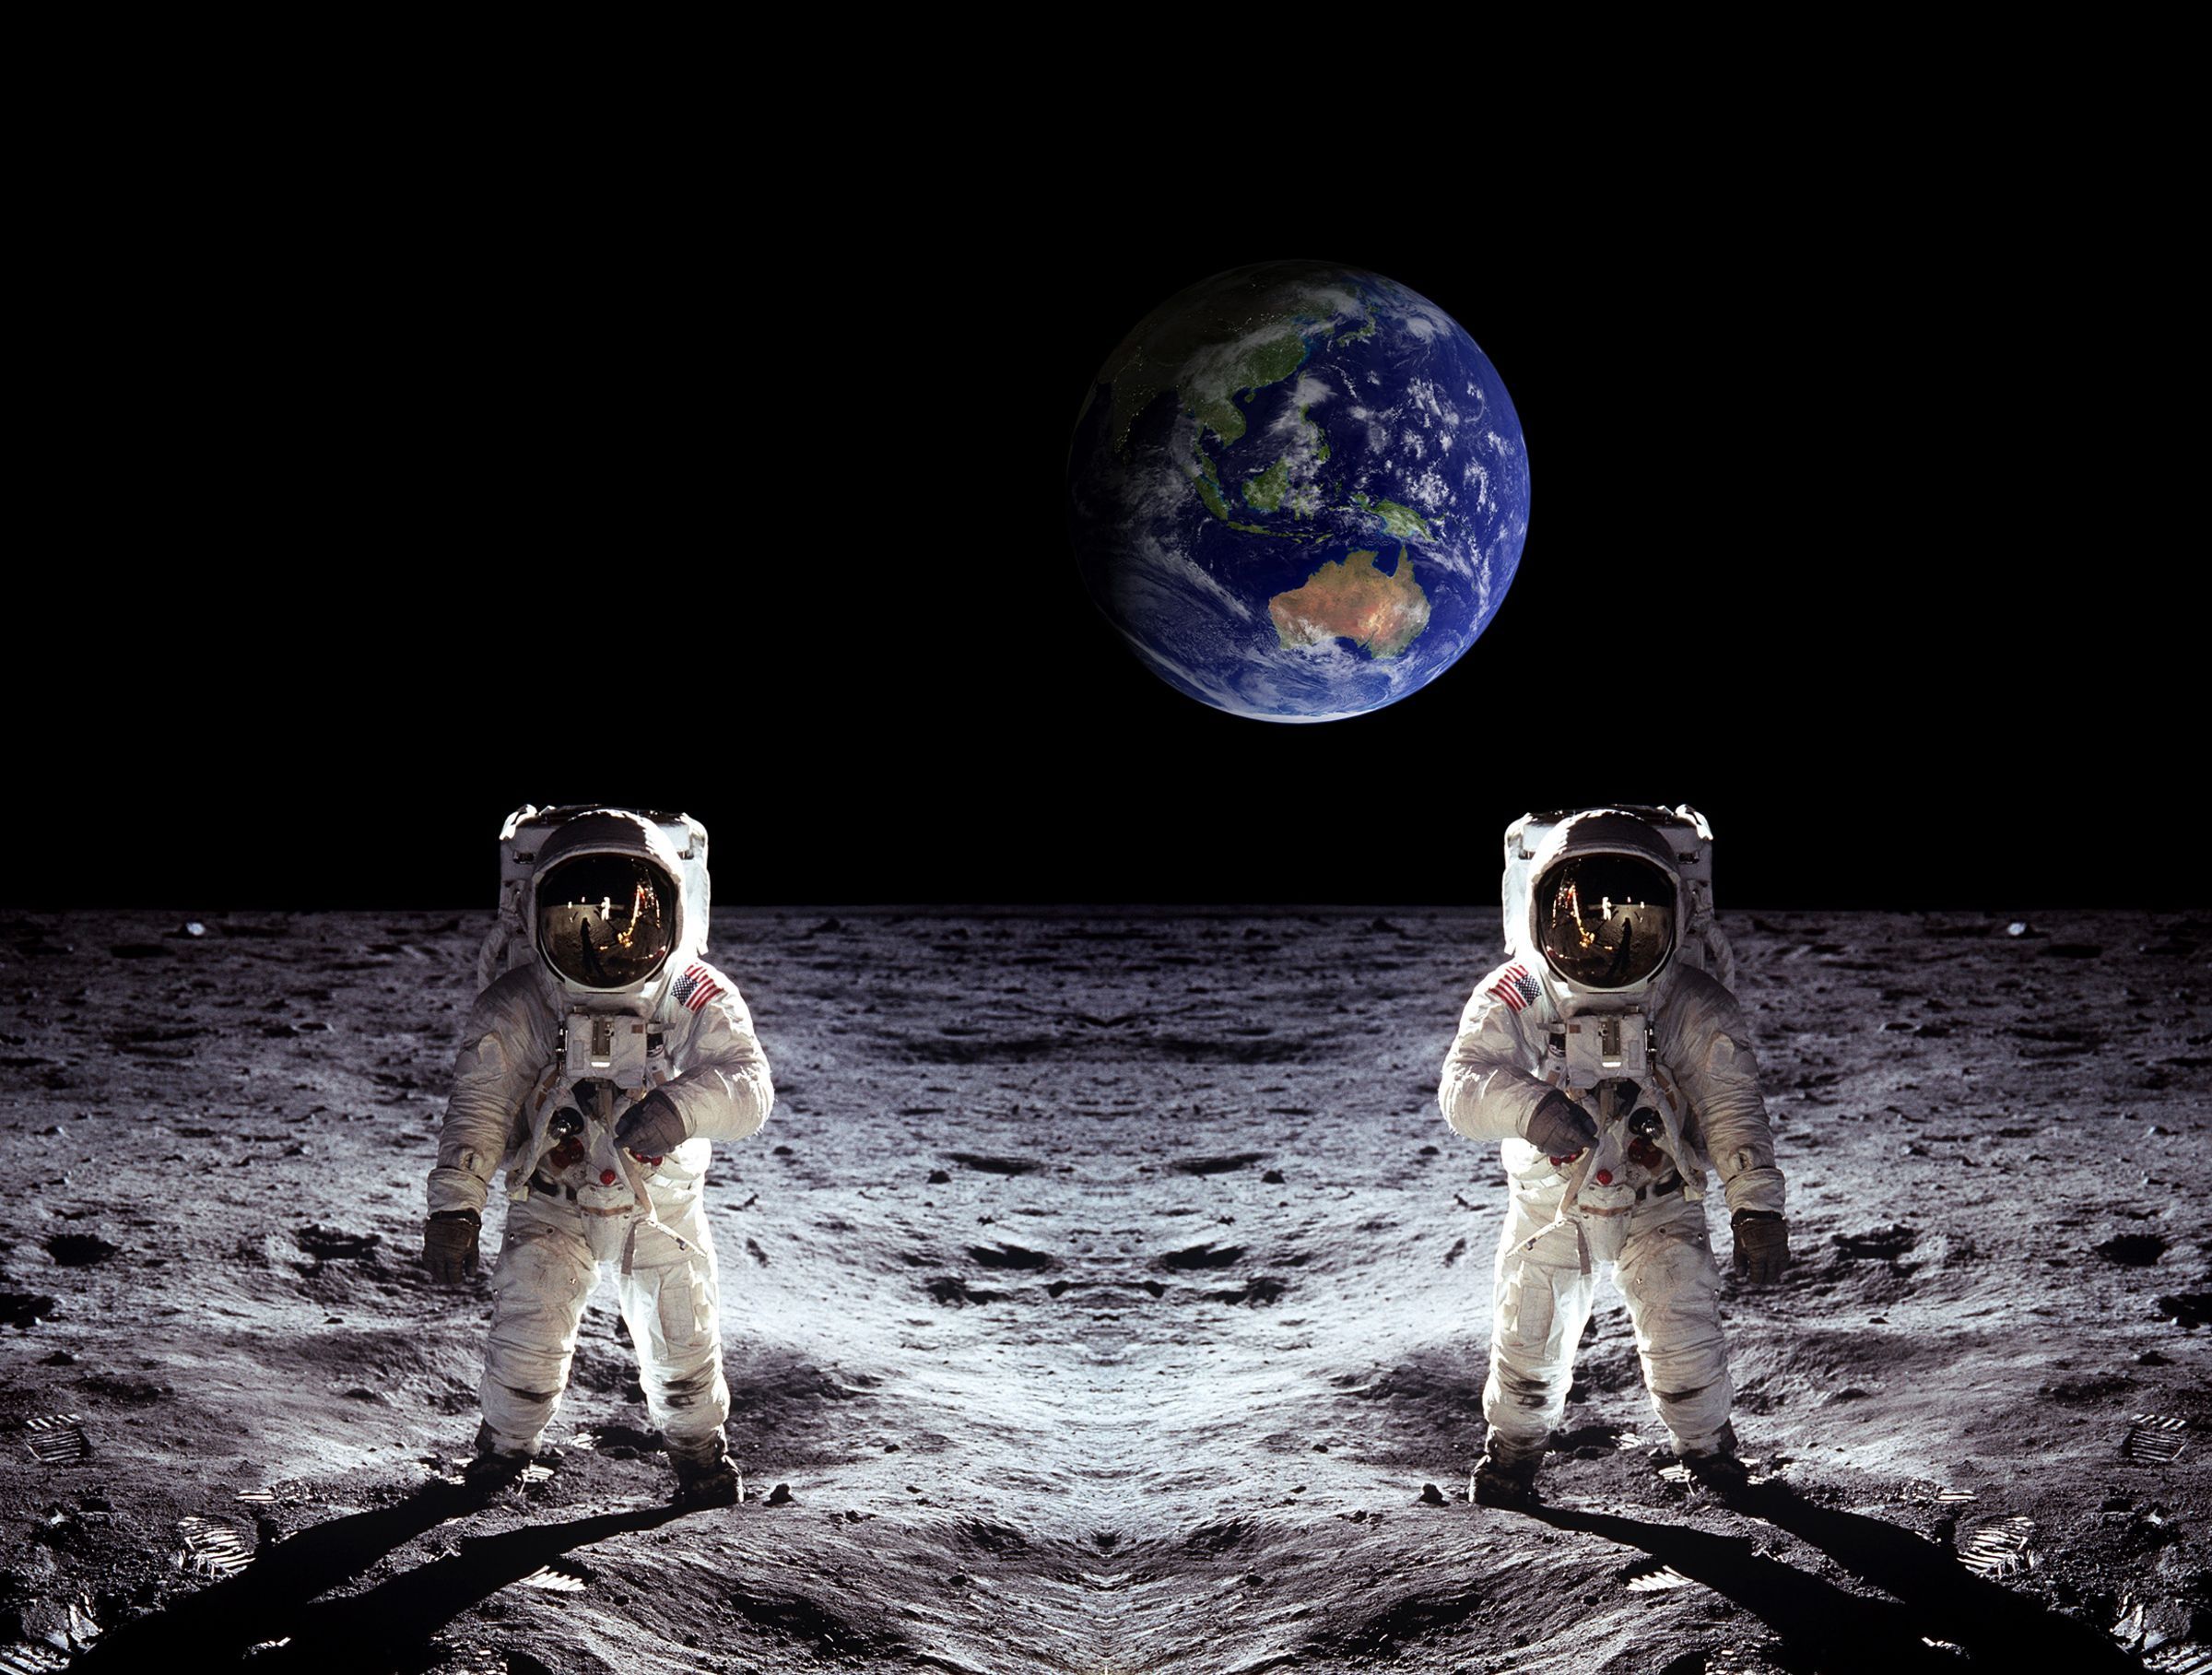 cijfer indruk Mordrin Wat als de astronauten waren gestorven op de maan?